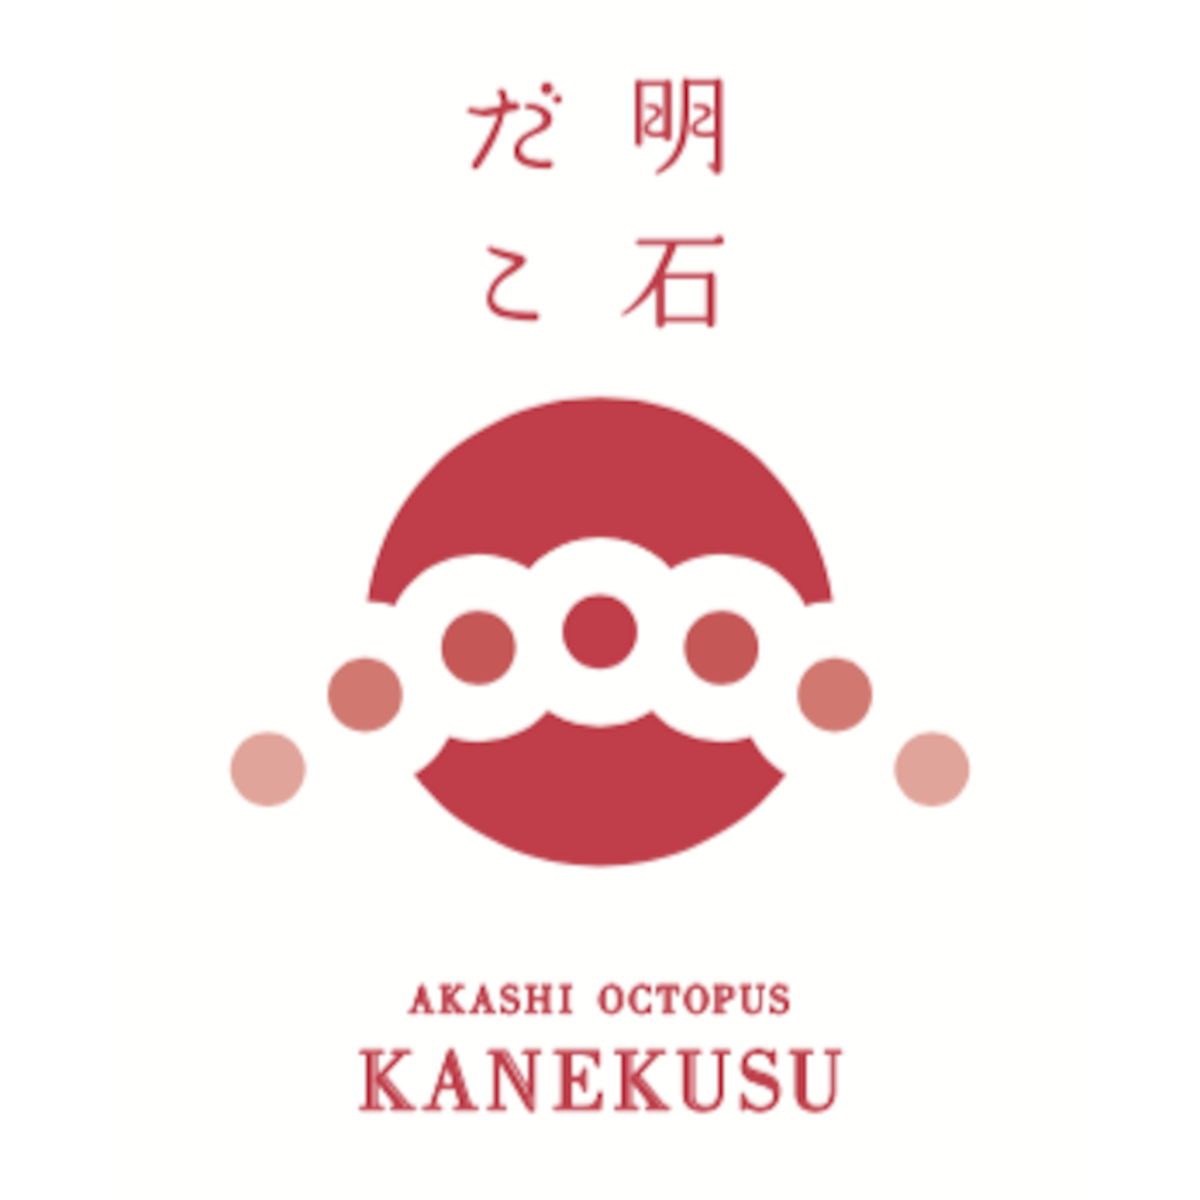 kanekusu powered by BASE